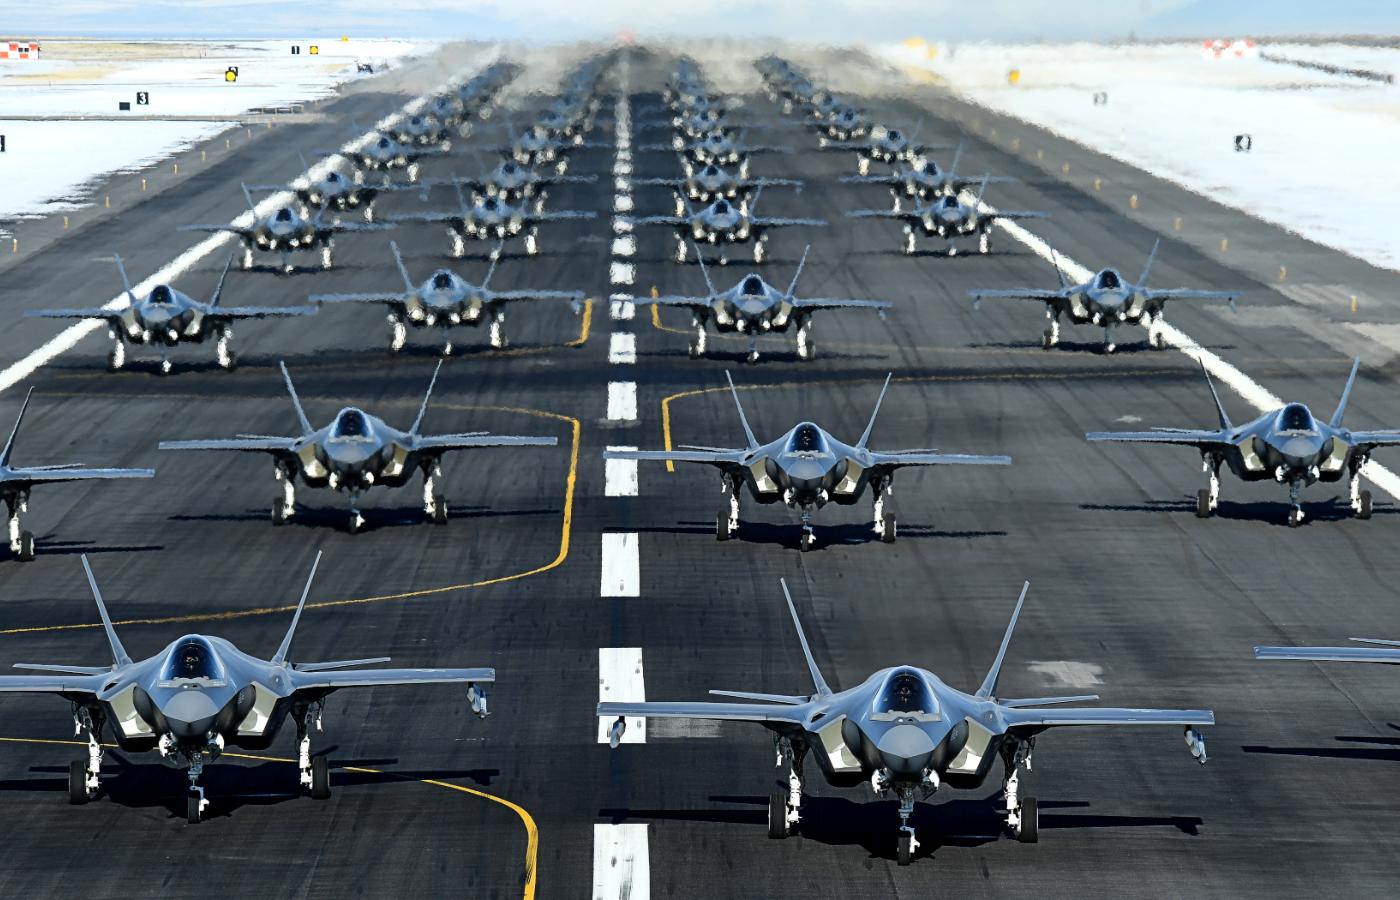 Eskadra samolotów wojskowych F-35A